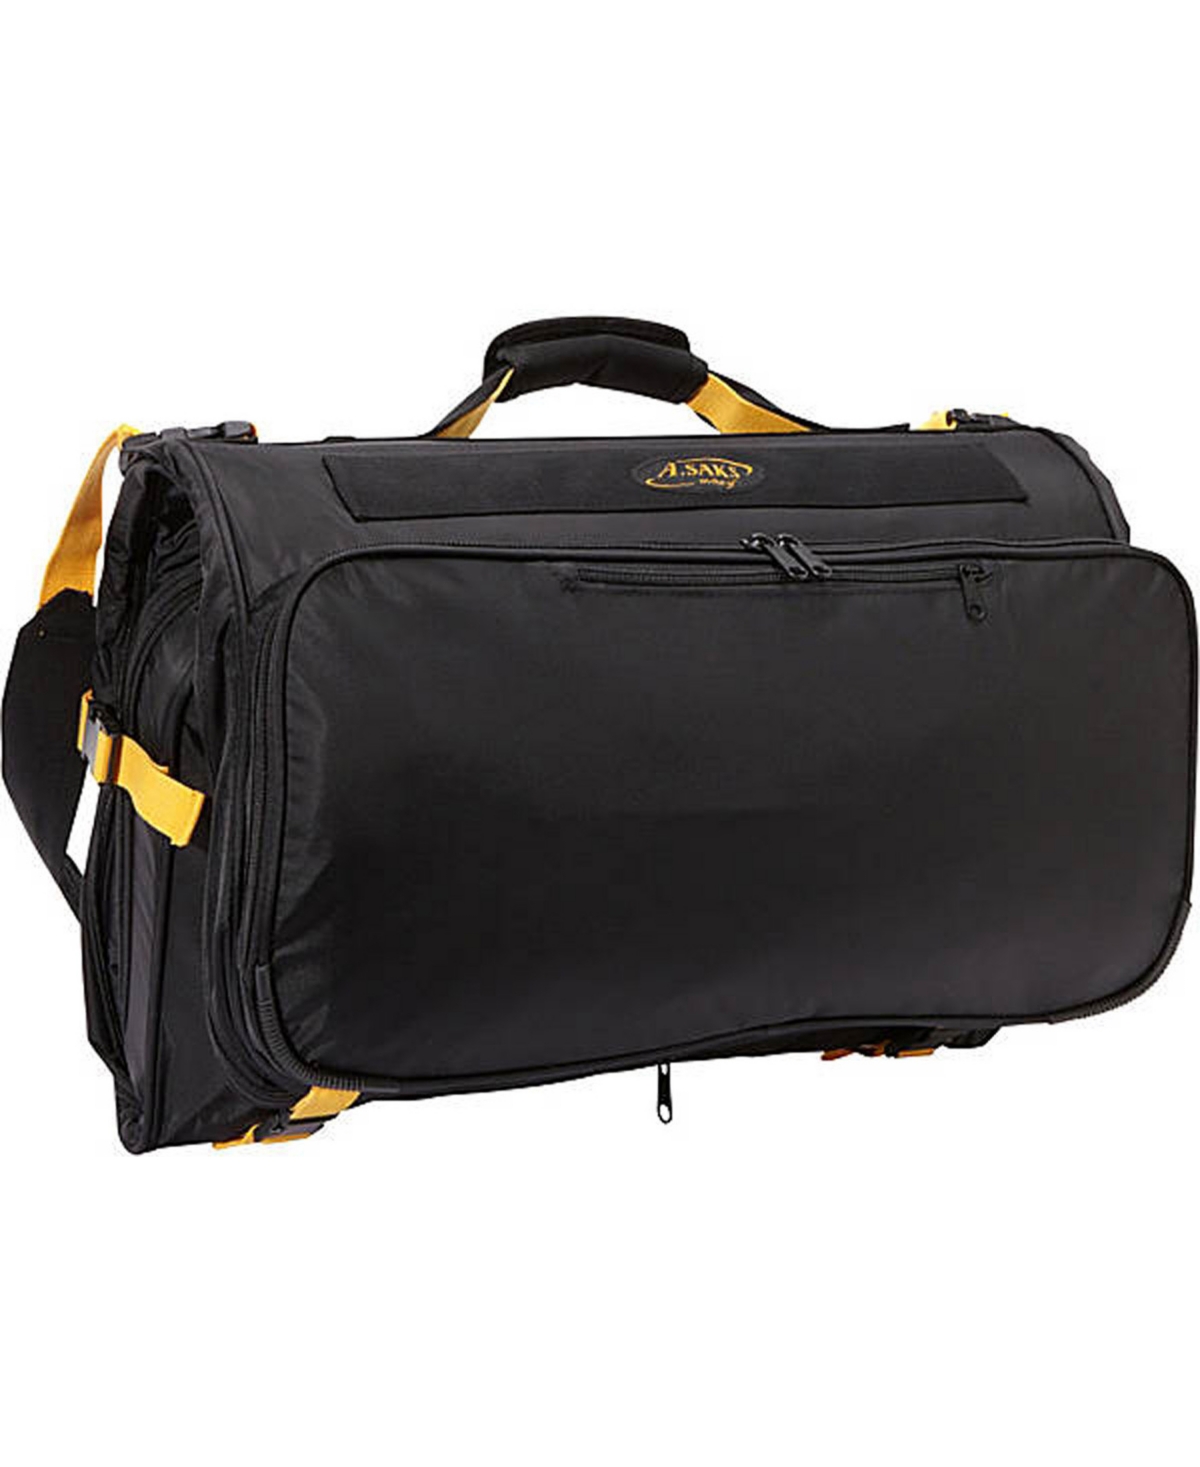 Compact Expandable Tri-Fold Garment Bag - Black